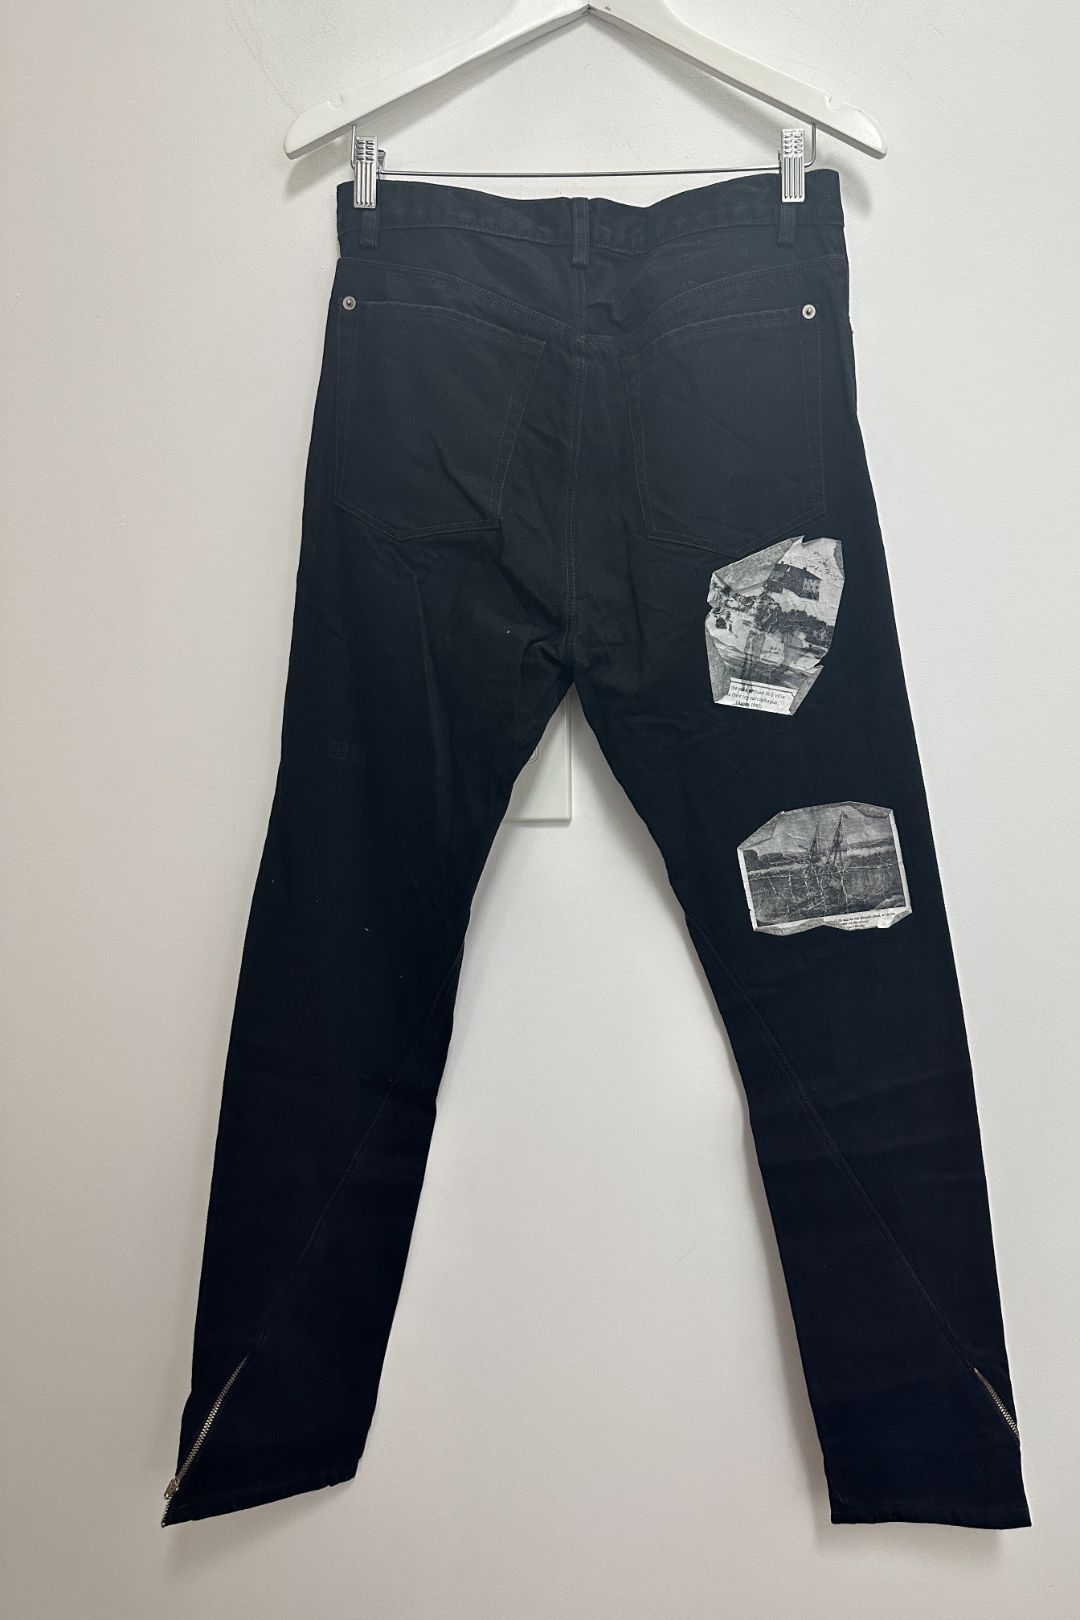 Ksubi Ankle Zipper Black Jeans 